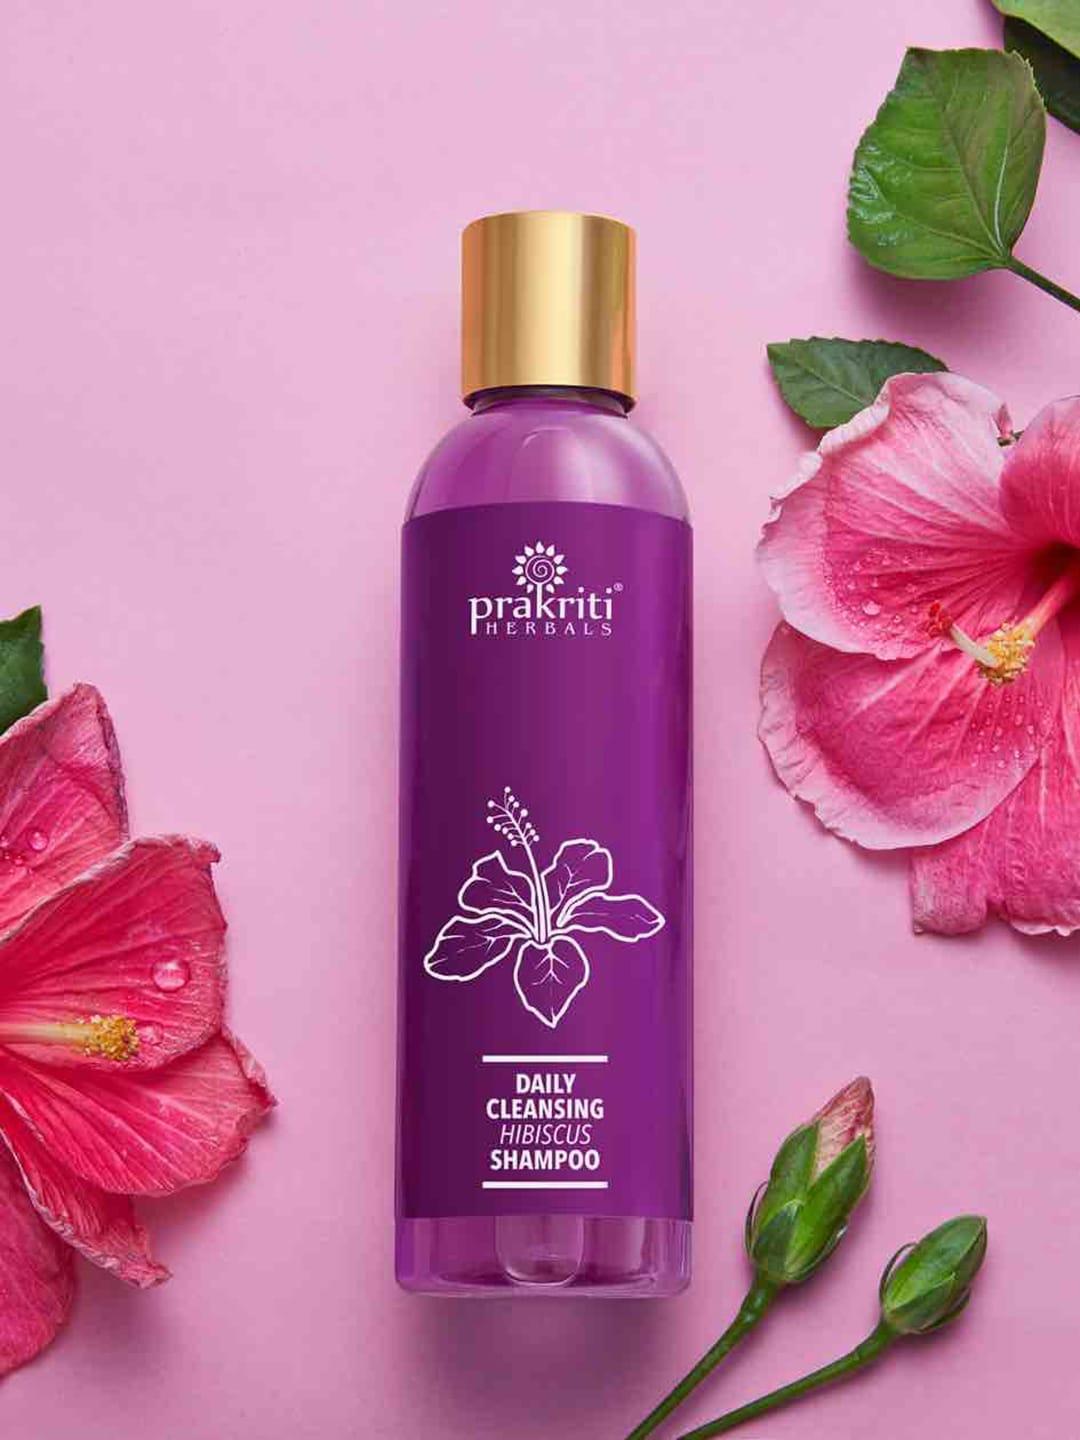 prakriti-herbals-daily-cleansing-hibiscus-shampoo---120ml